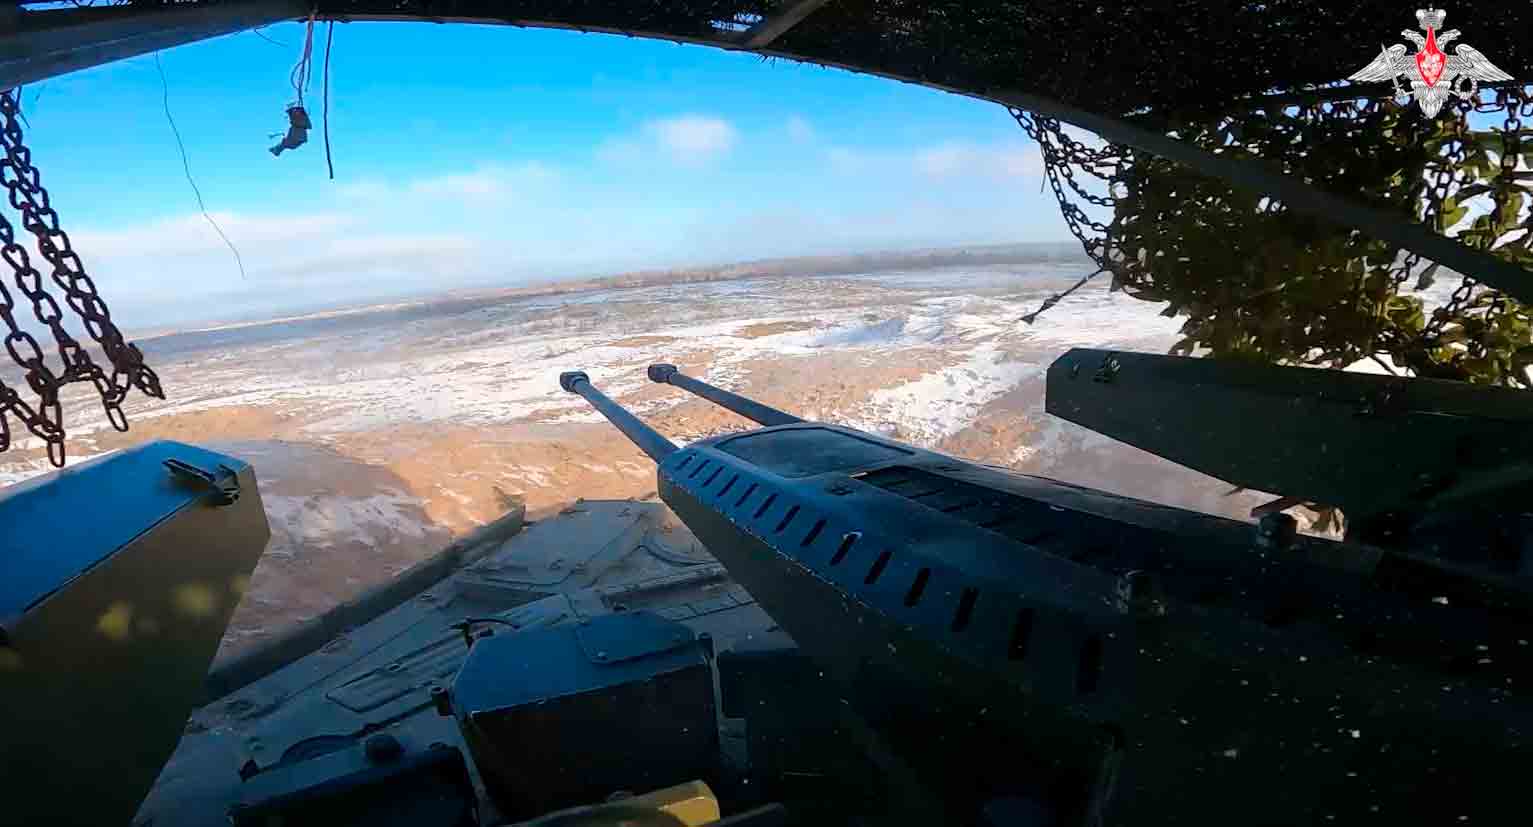 De nouveaux chars 'Terminator' arrivent directement dans la zone de combat en Ukraine